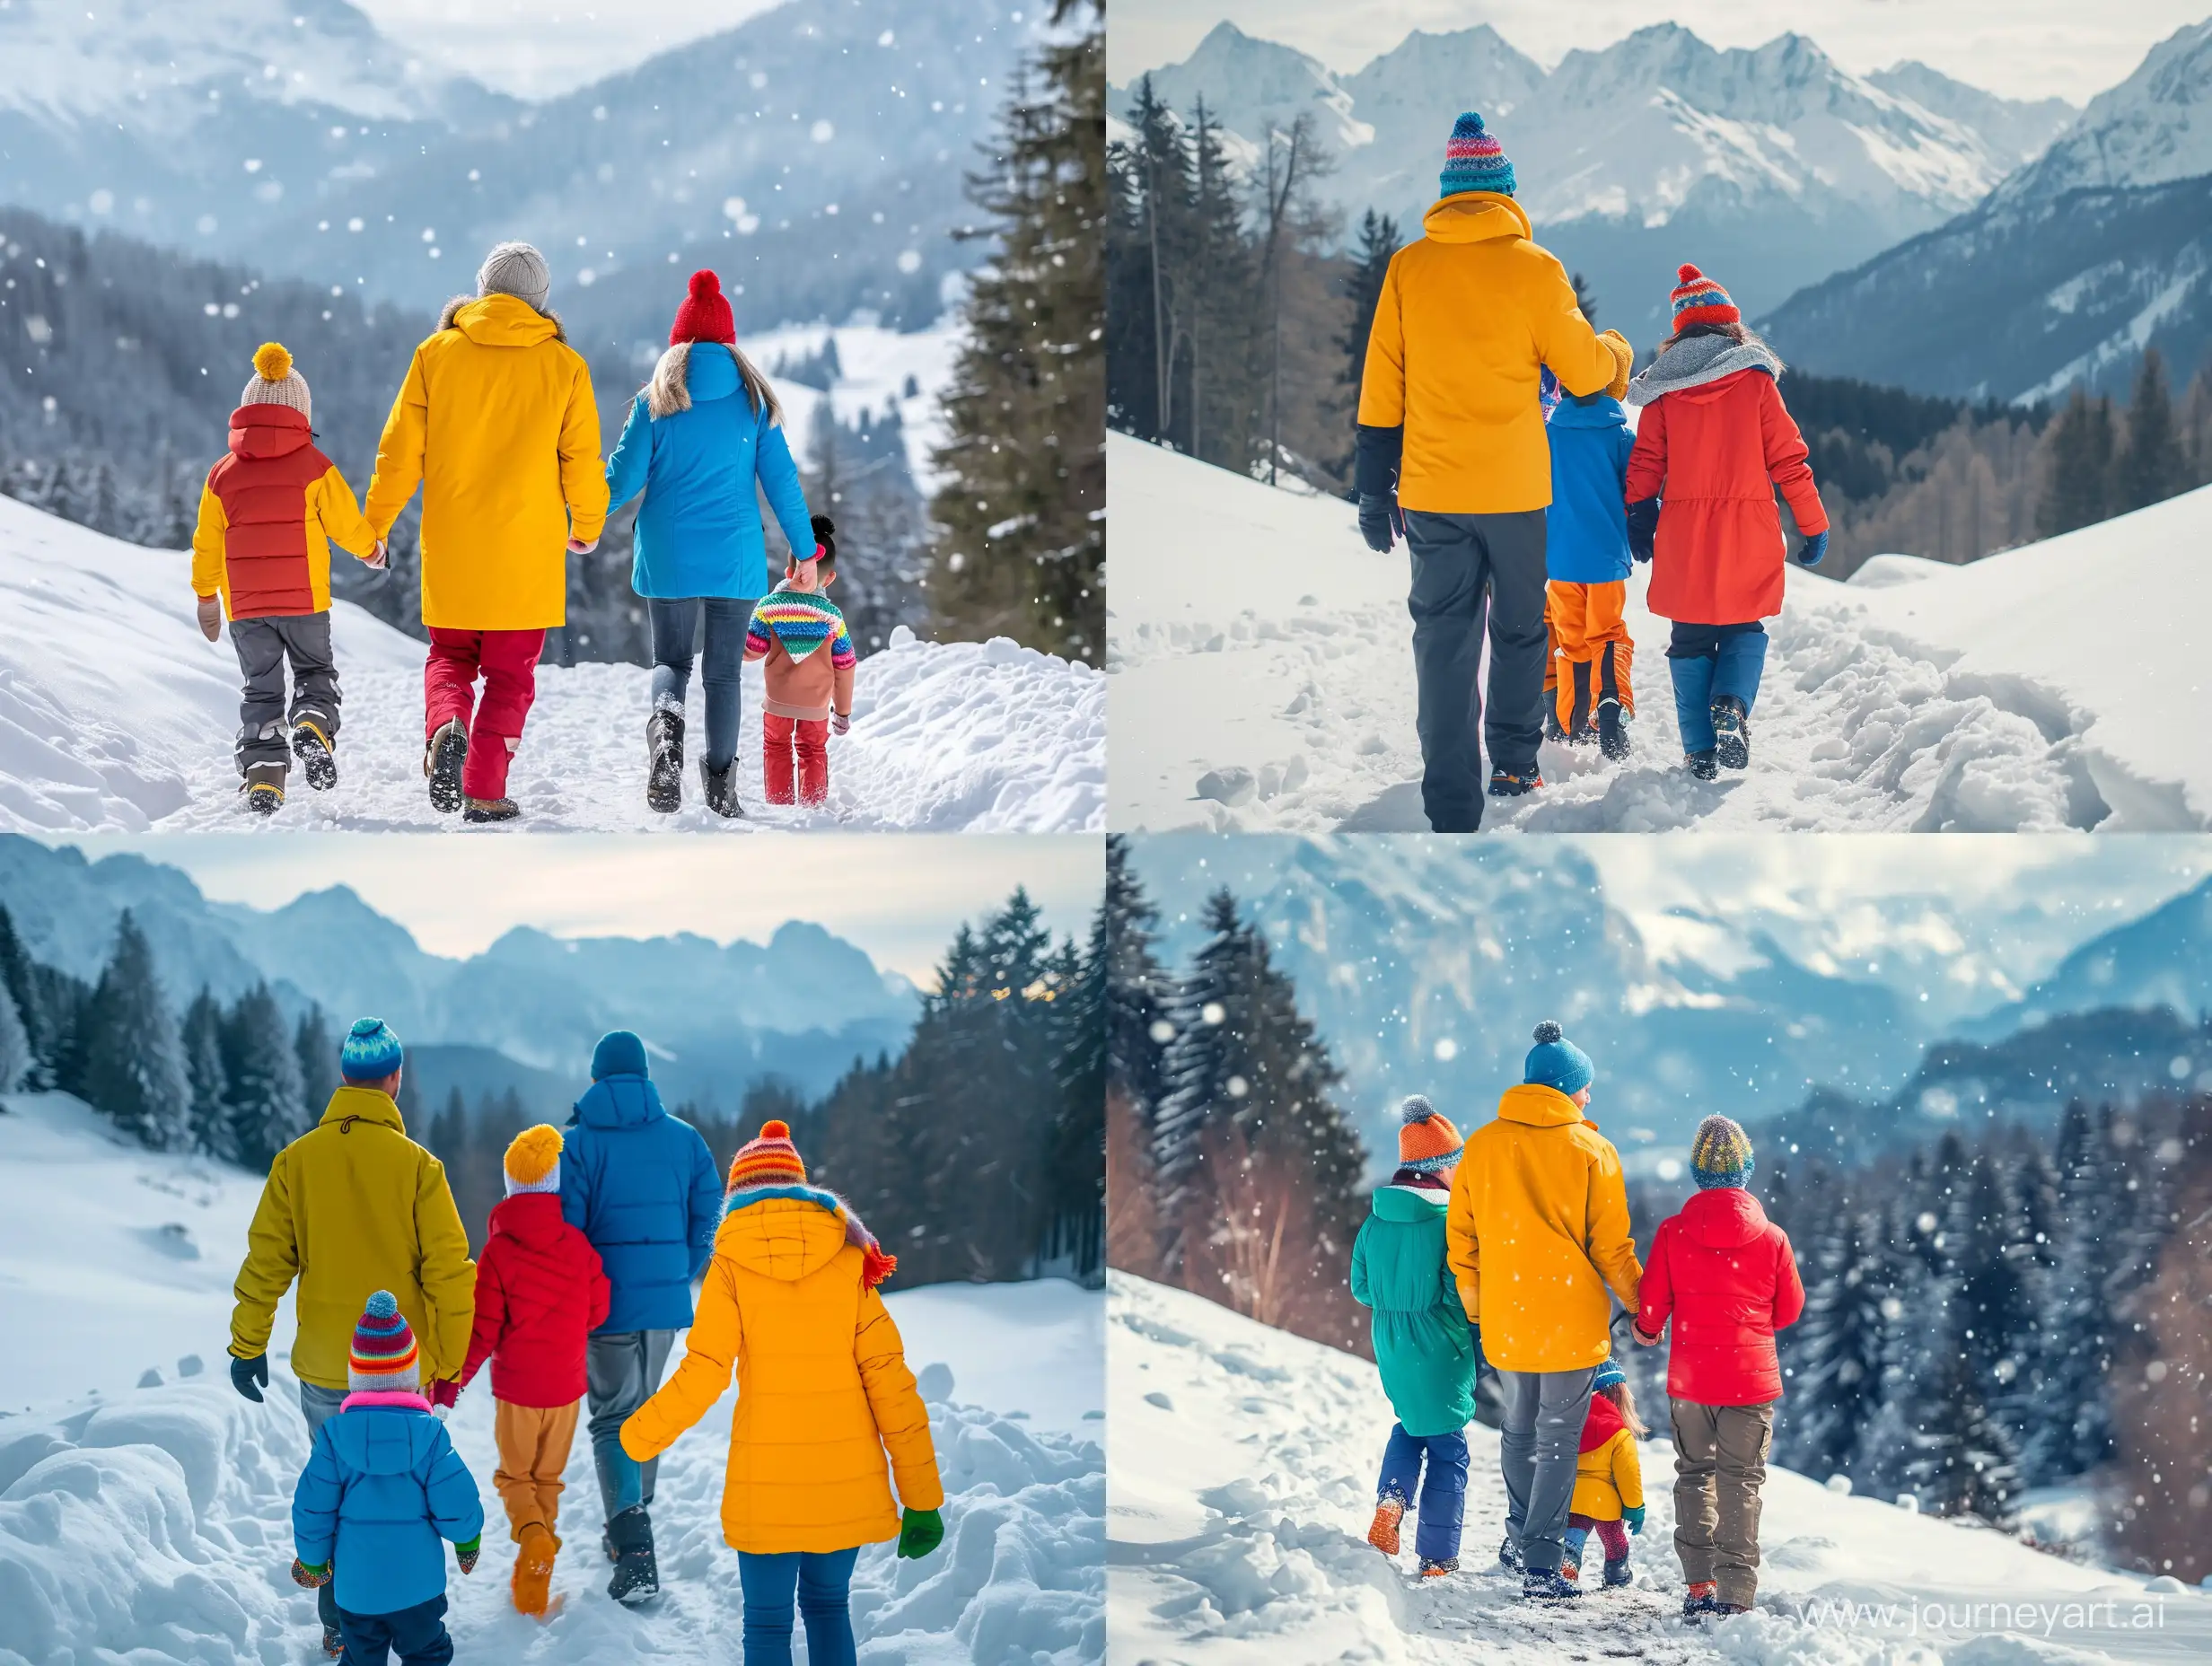 Счастливая семья - папа, мама, мальчик и девочка - гуляют по заснеженному склону горы в ярких цветных куртках, шапках и шарфах. Вдали виднеются заснеженный лес и другие вершины. Используй драматическое освещение, мягкий боке и интересную композицию для создания впечатляющего зимнего пейзажа.